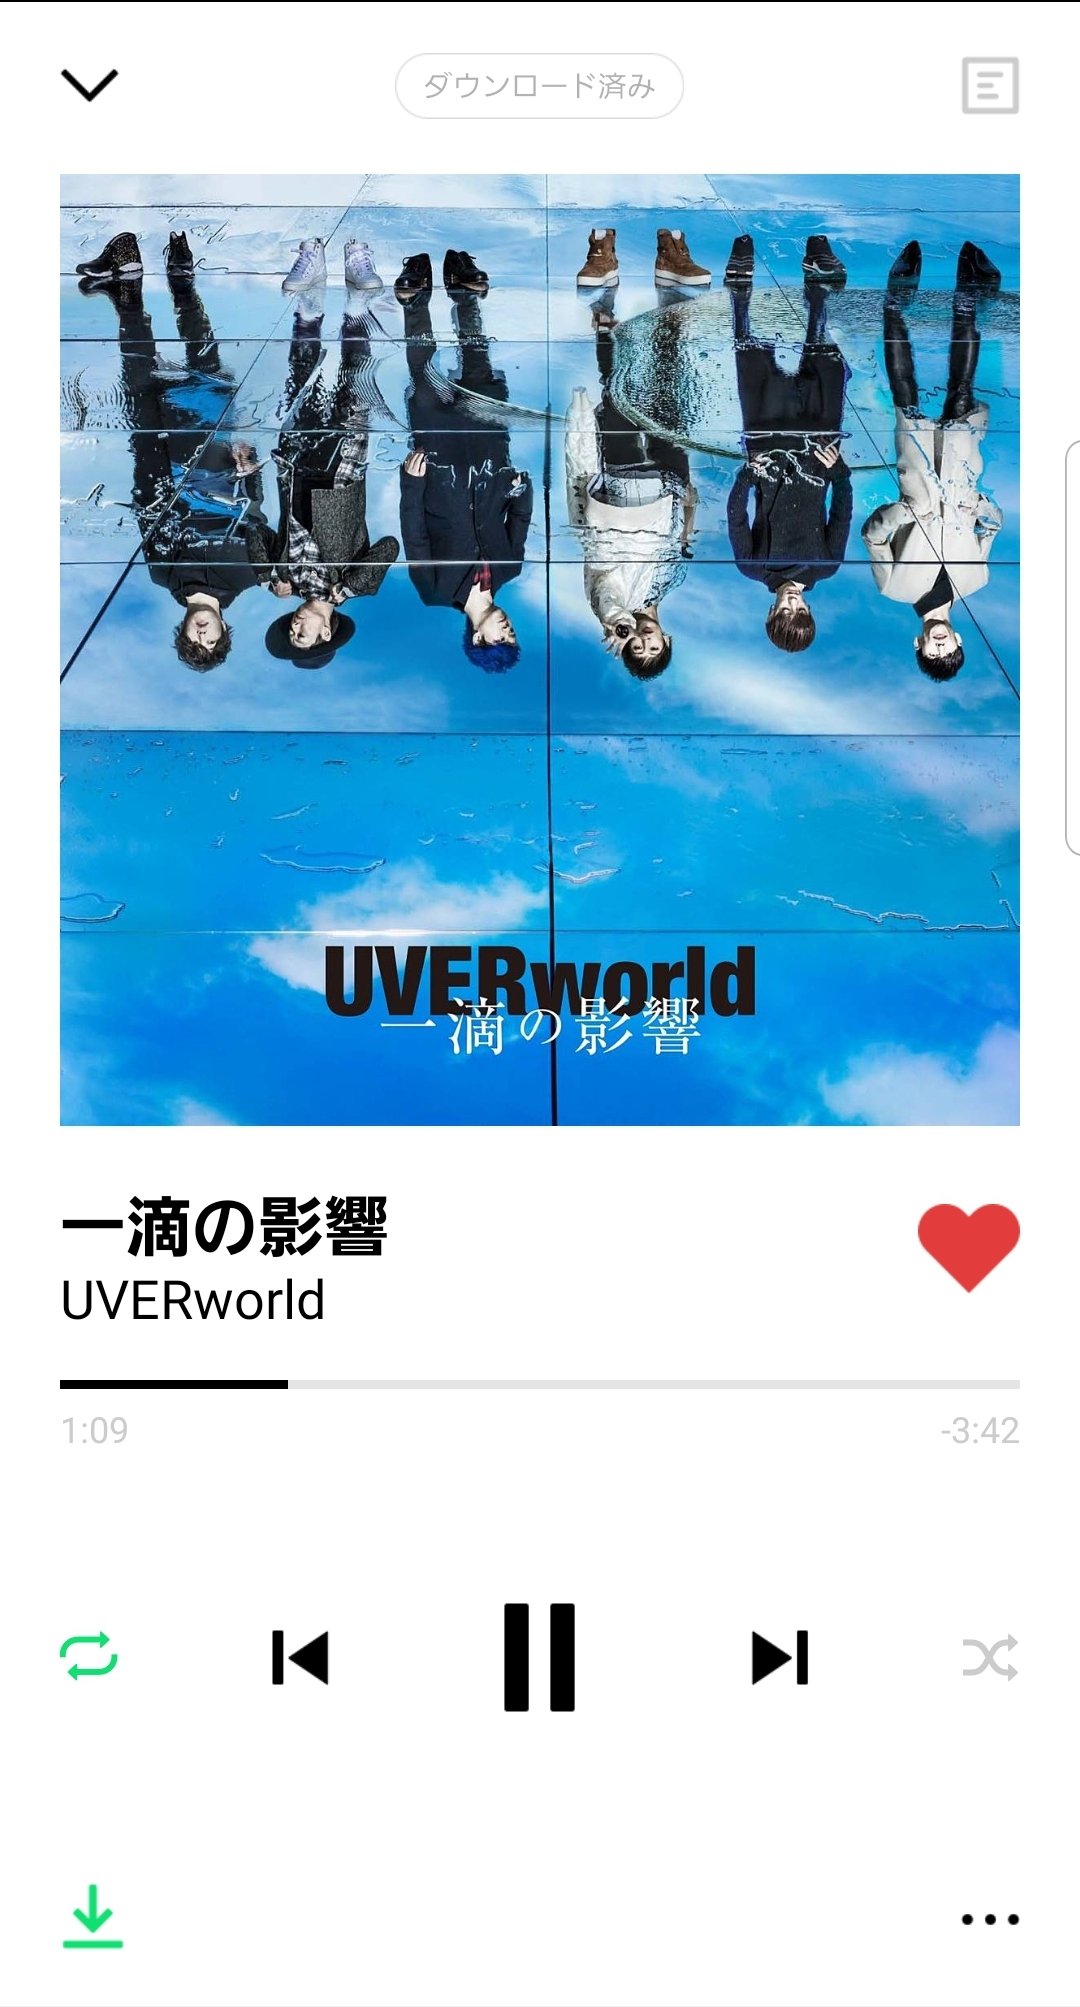 一滴の影響 Uverworld 歌詞の意味を考察 背中を押してもらえる楽曲 Framu Media